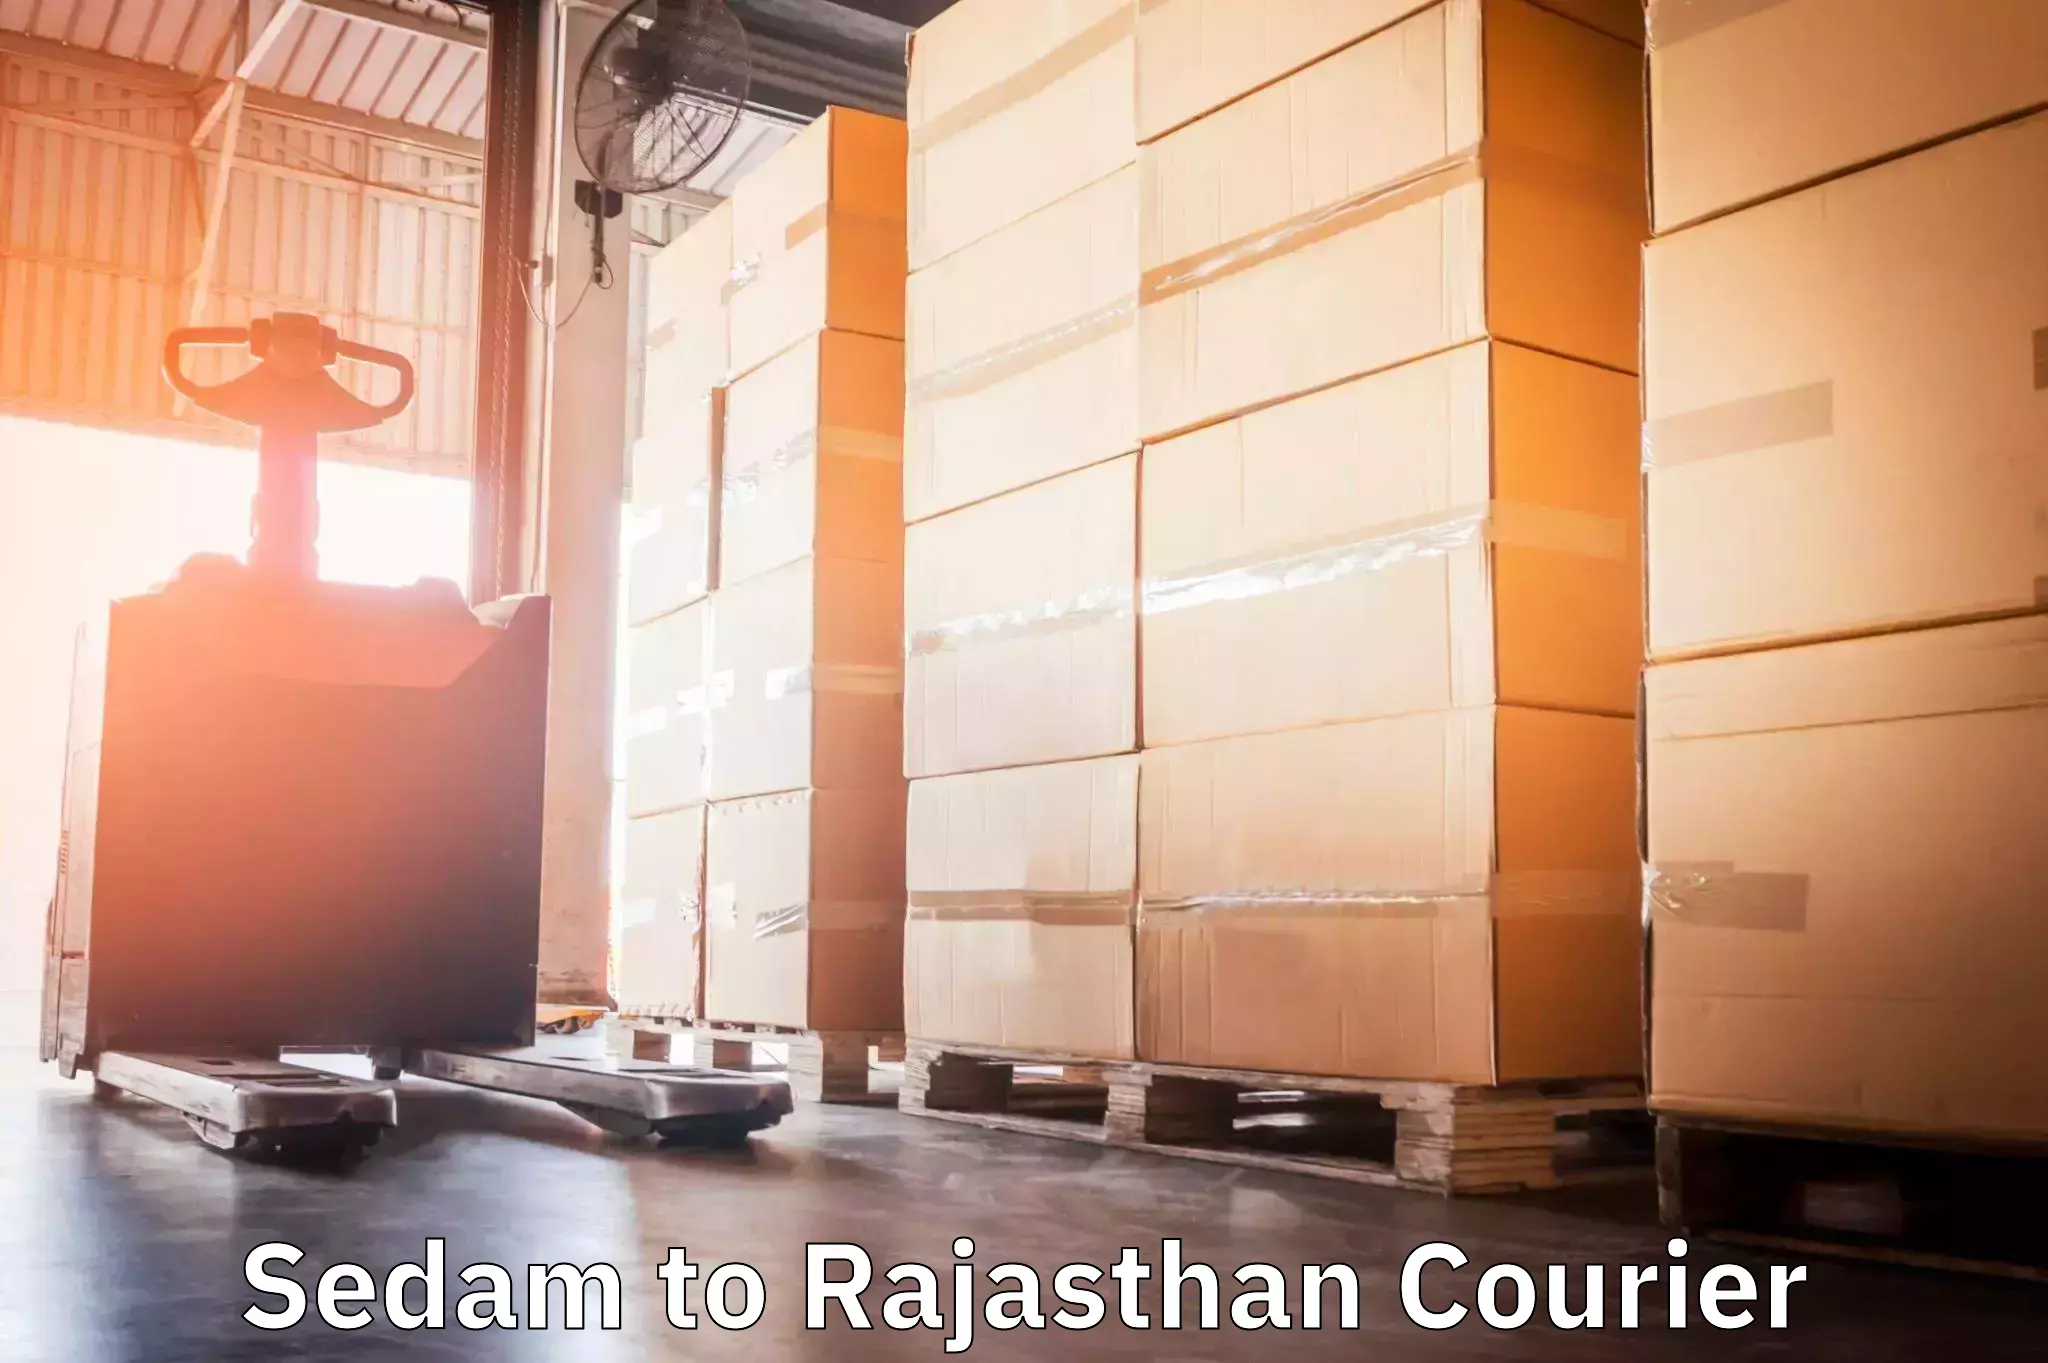 International courier rates Sedam to Pratapgarh Rajasthan